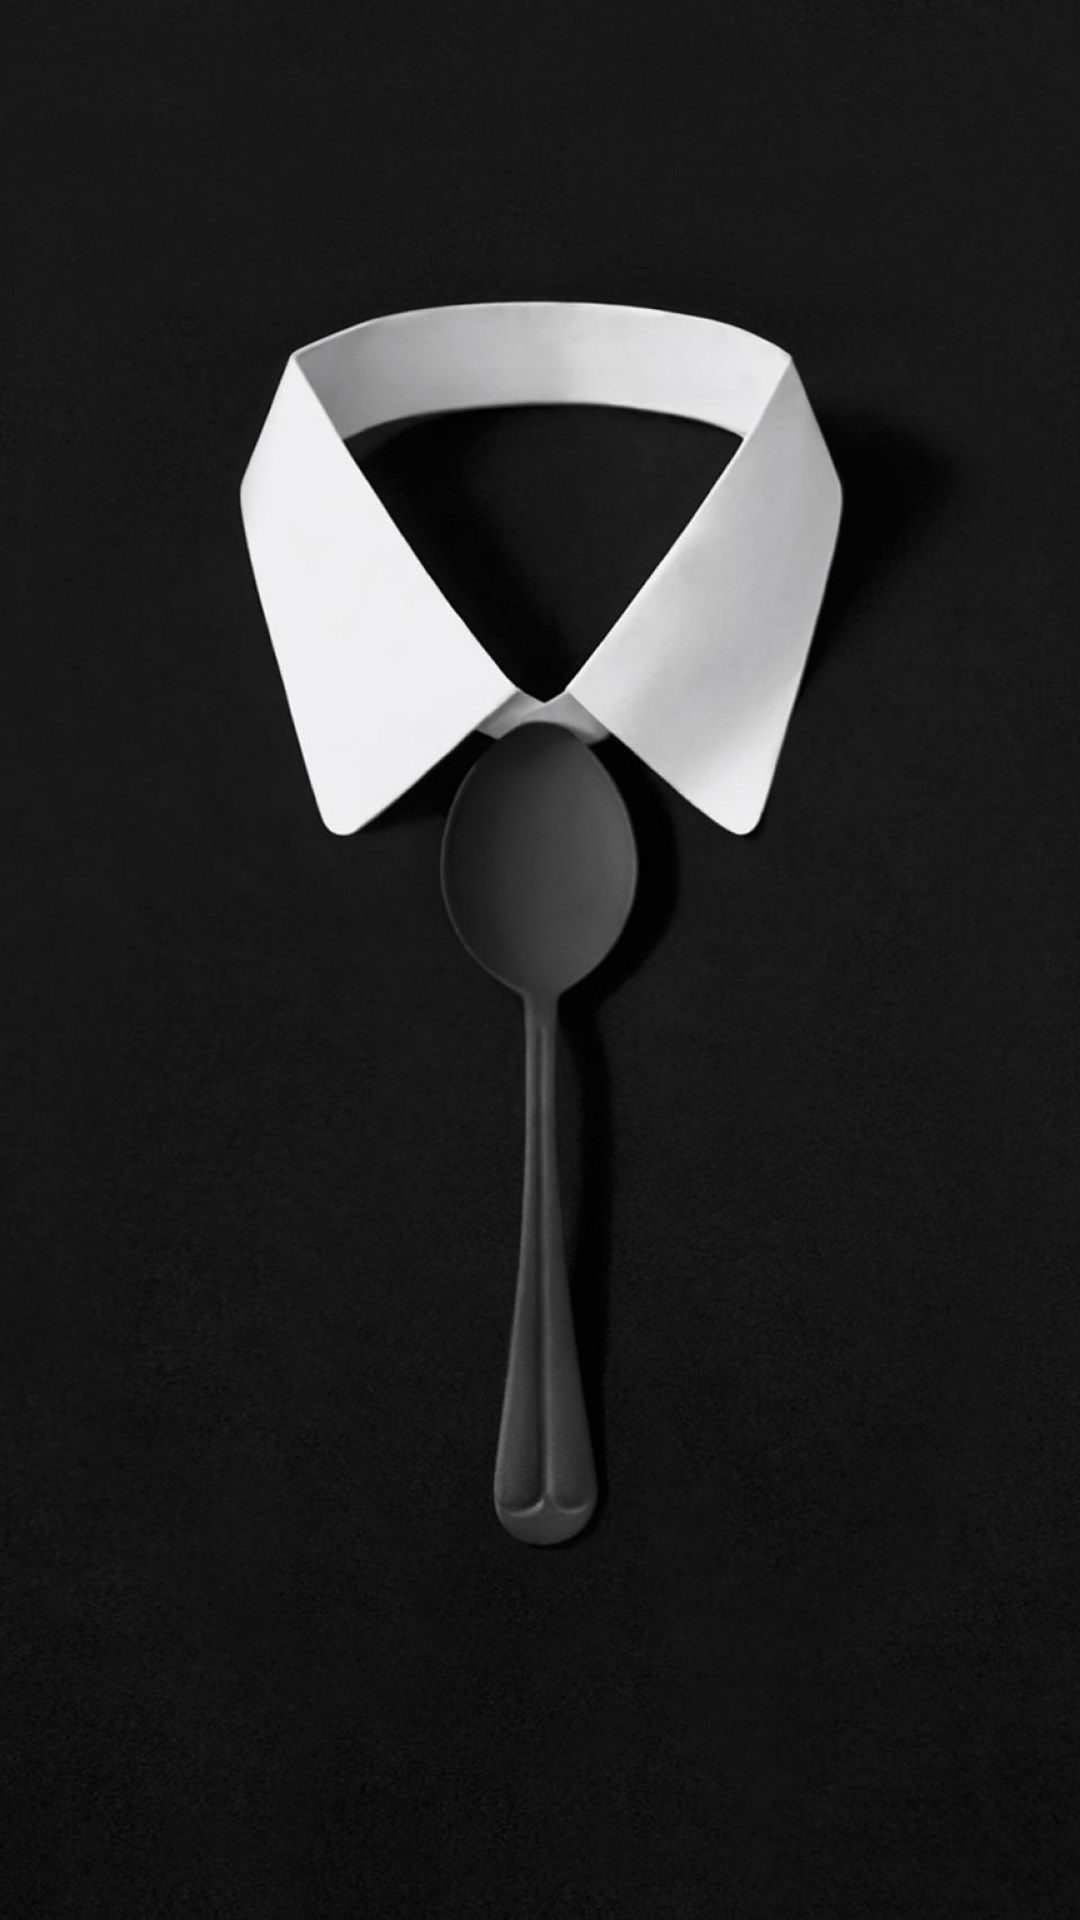 Dark Simple Suit Spoon Tie Simple iPhone 8 Wallpaper Free Download